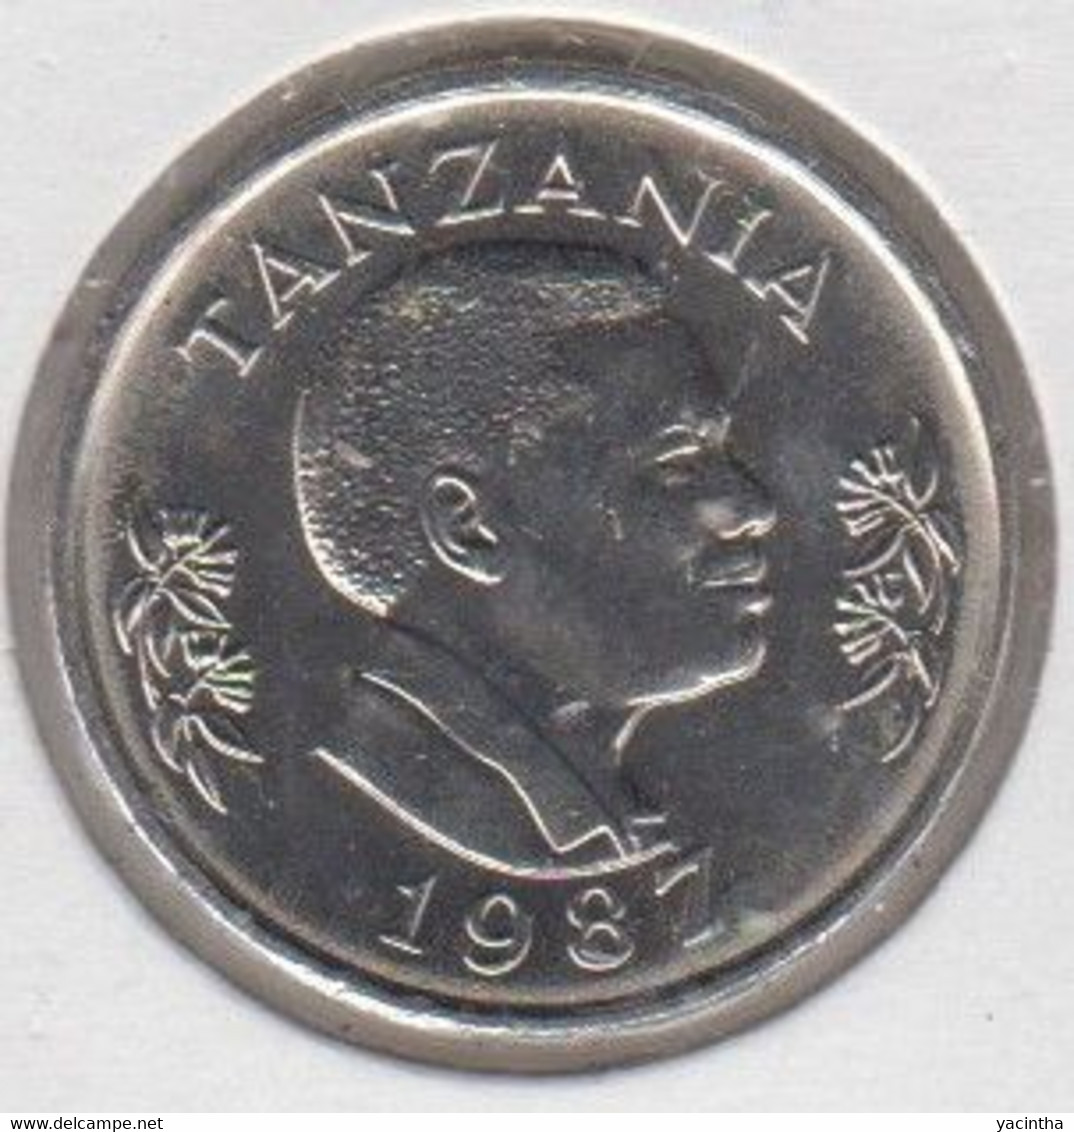 @Y@   Tanzania  1 Shilling  1987  Bu  (1415) - Tansania